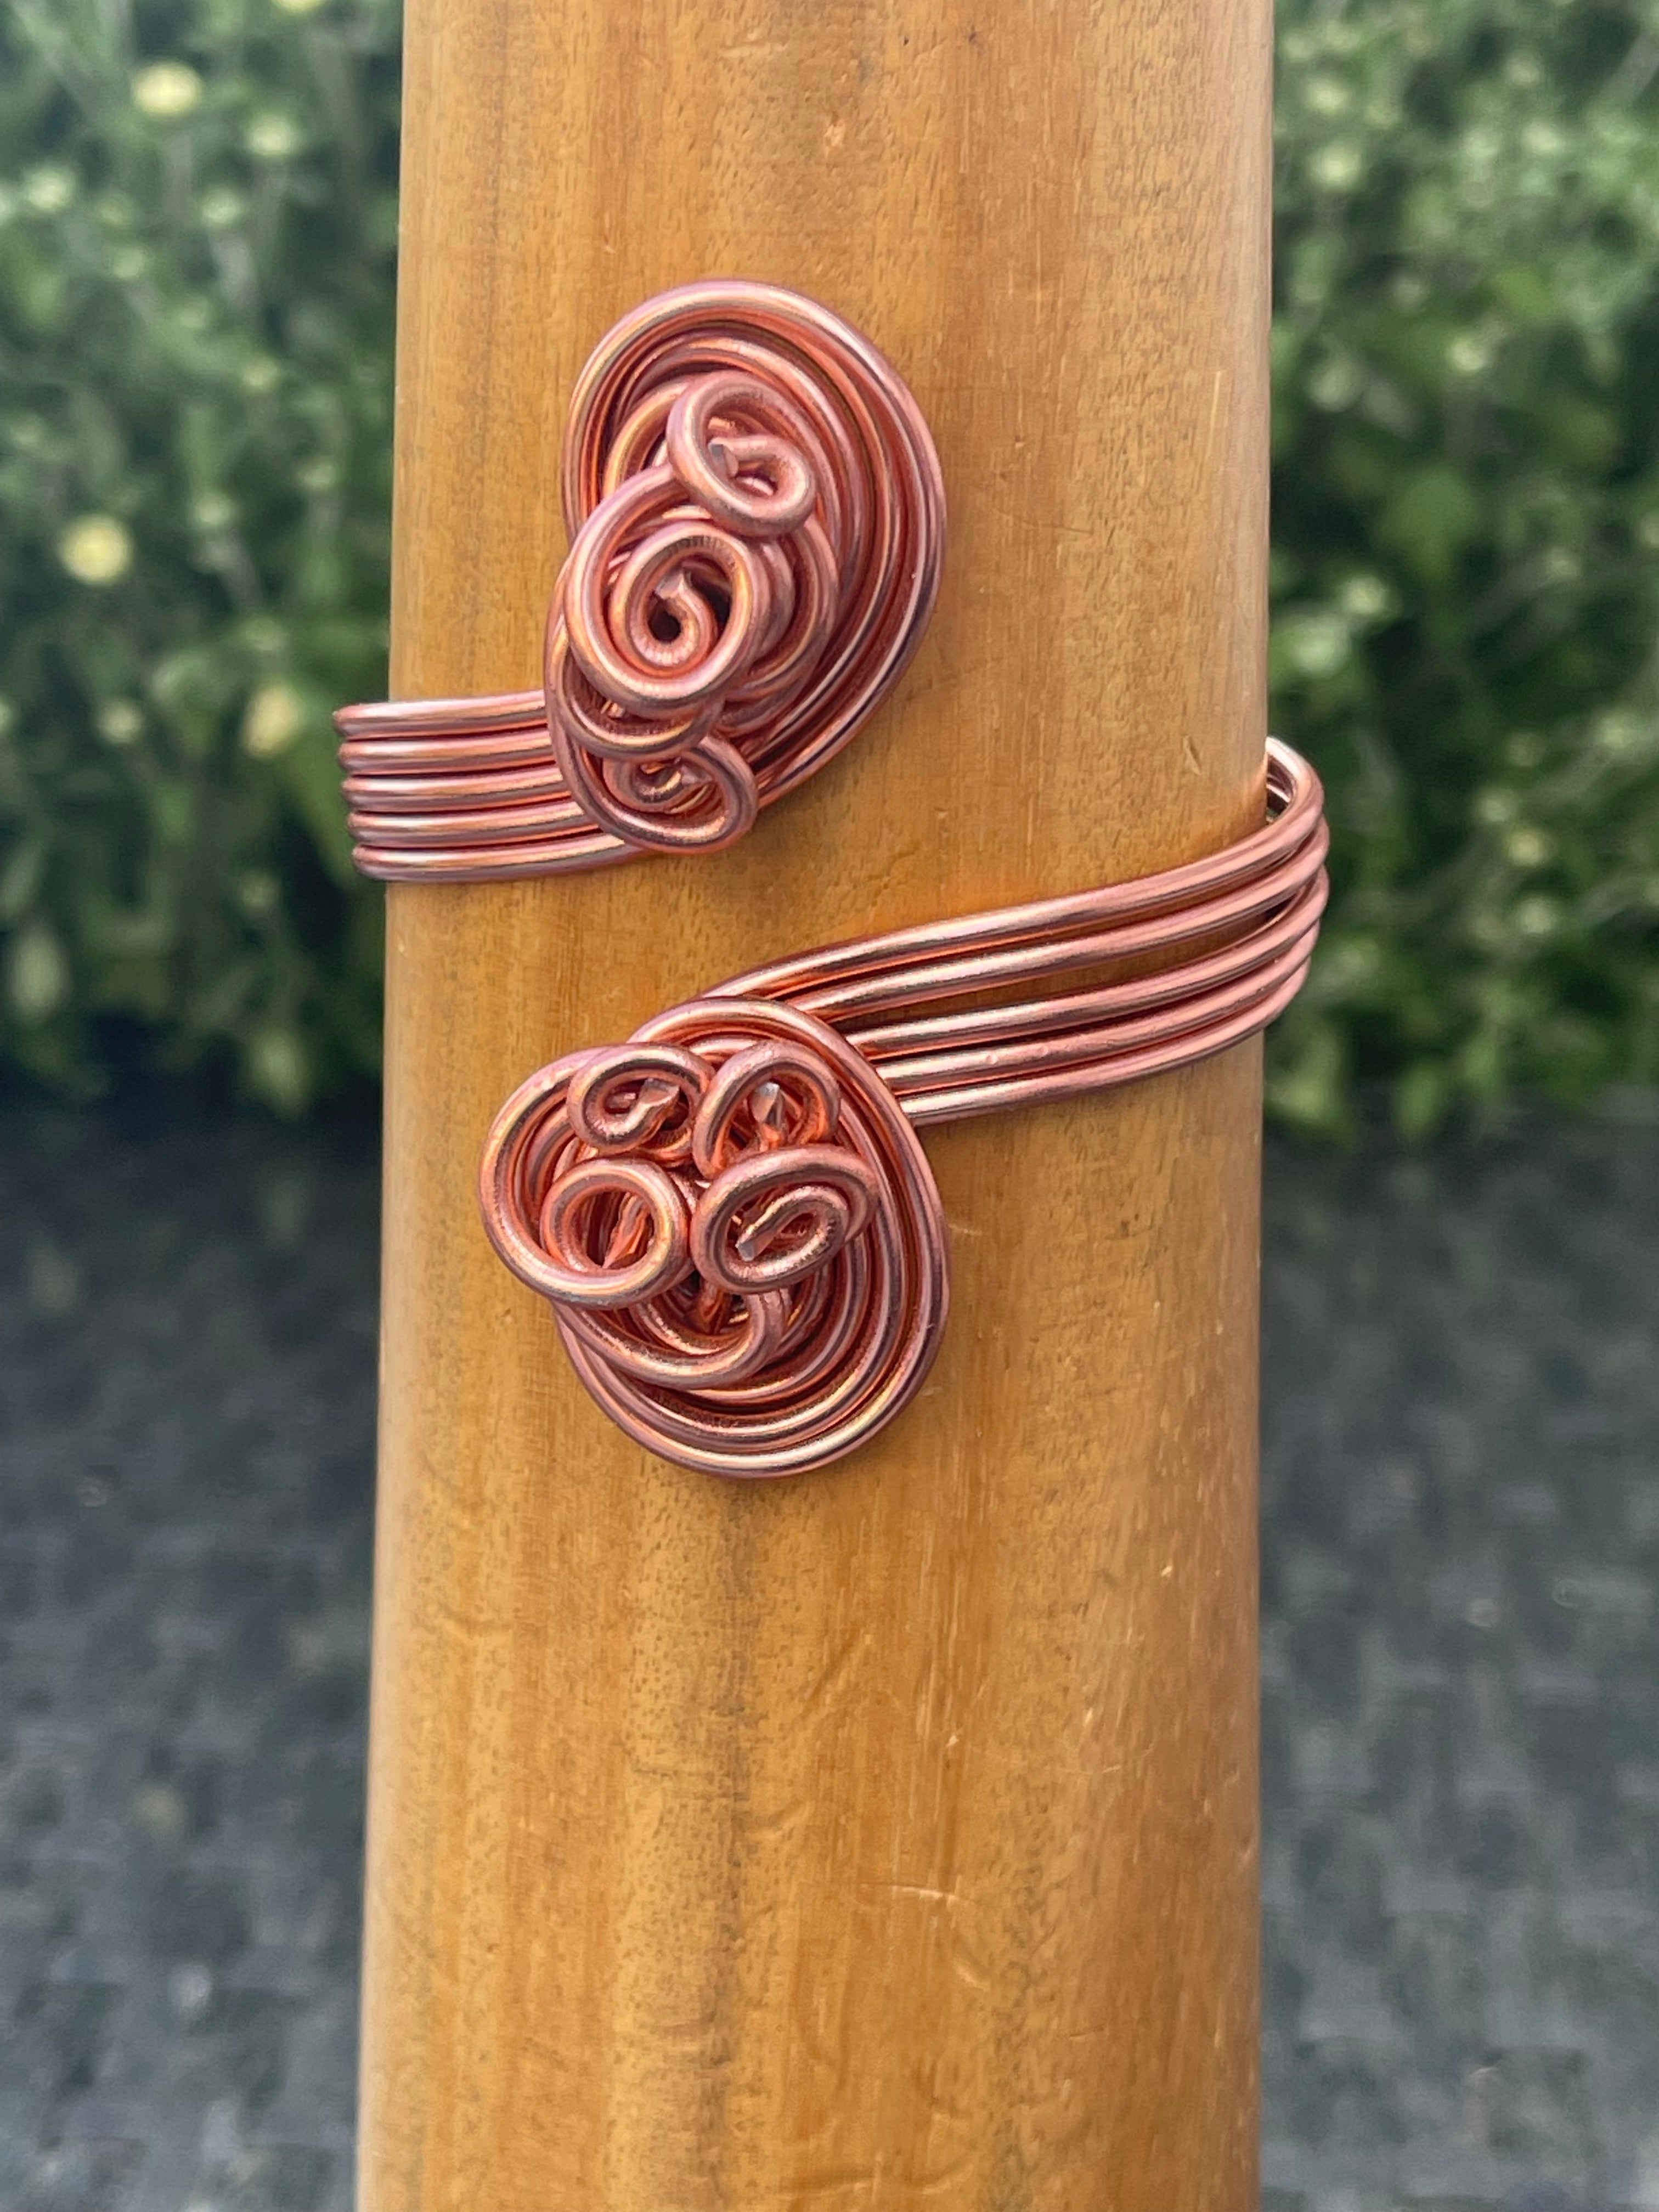 Copper Colored Aluminum Wire Cuff Bracelet